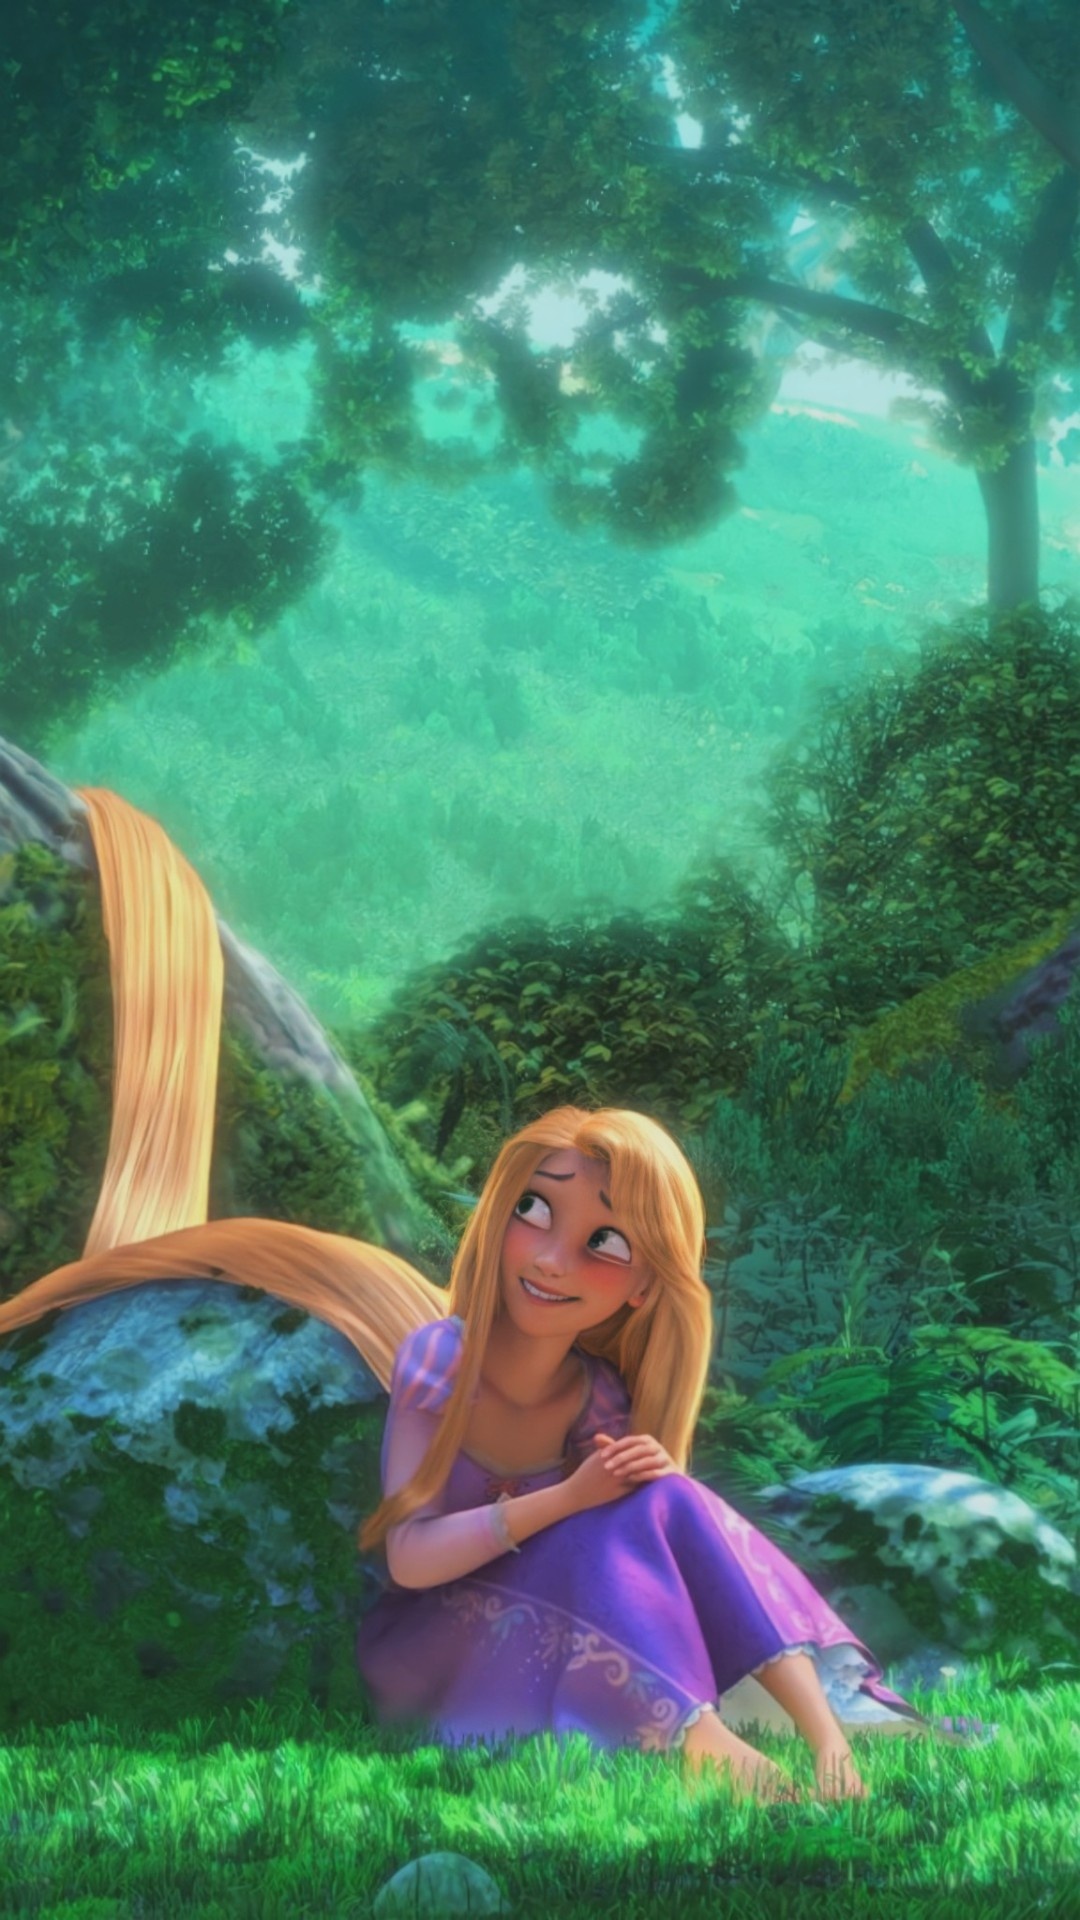 Tumblr posts, Rapunzel wallpaper, Artistic edits, Creative captures, 1080x1920 Full HD Phone